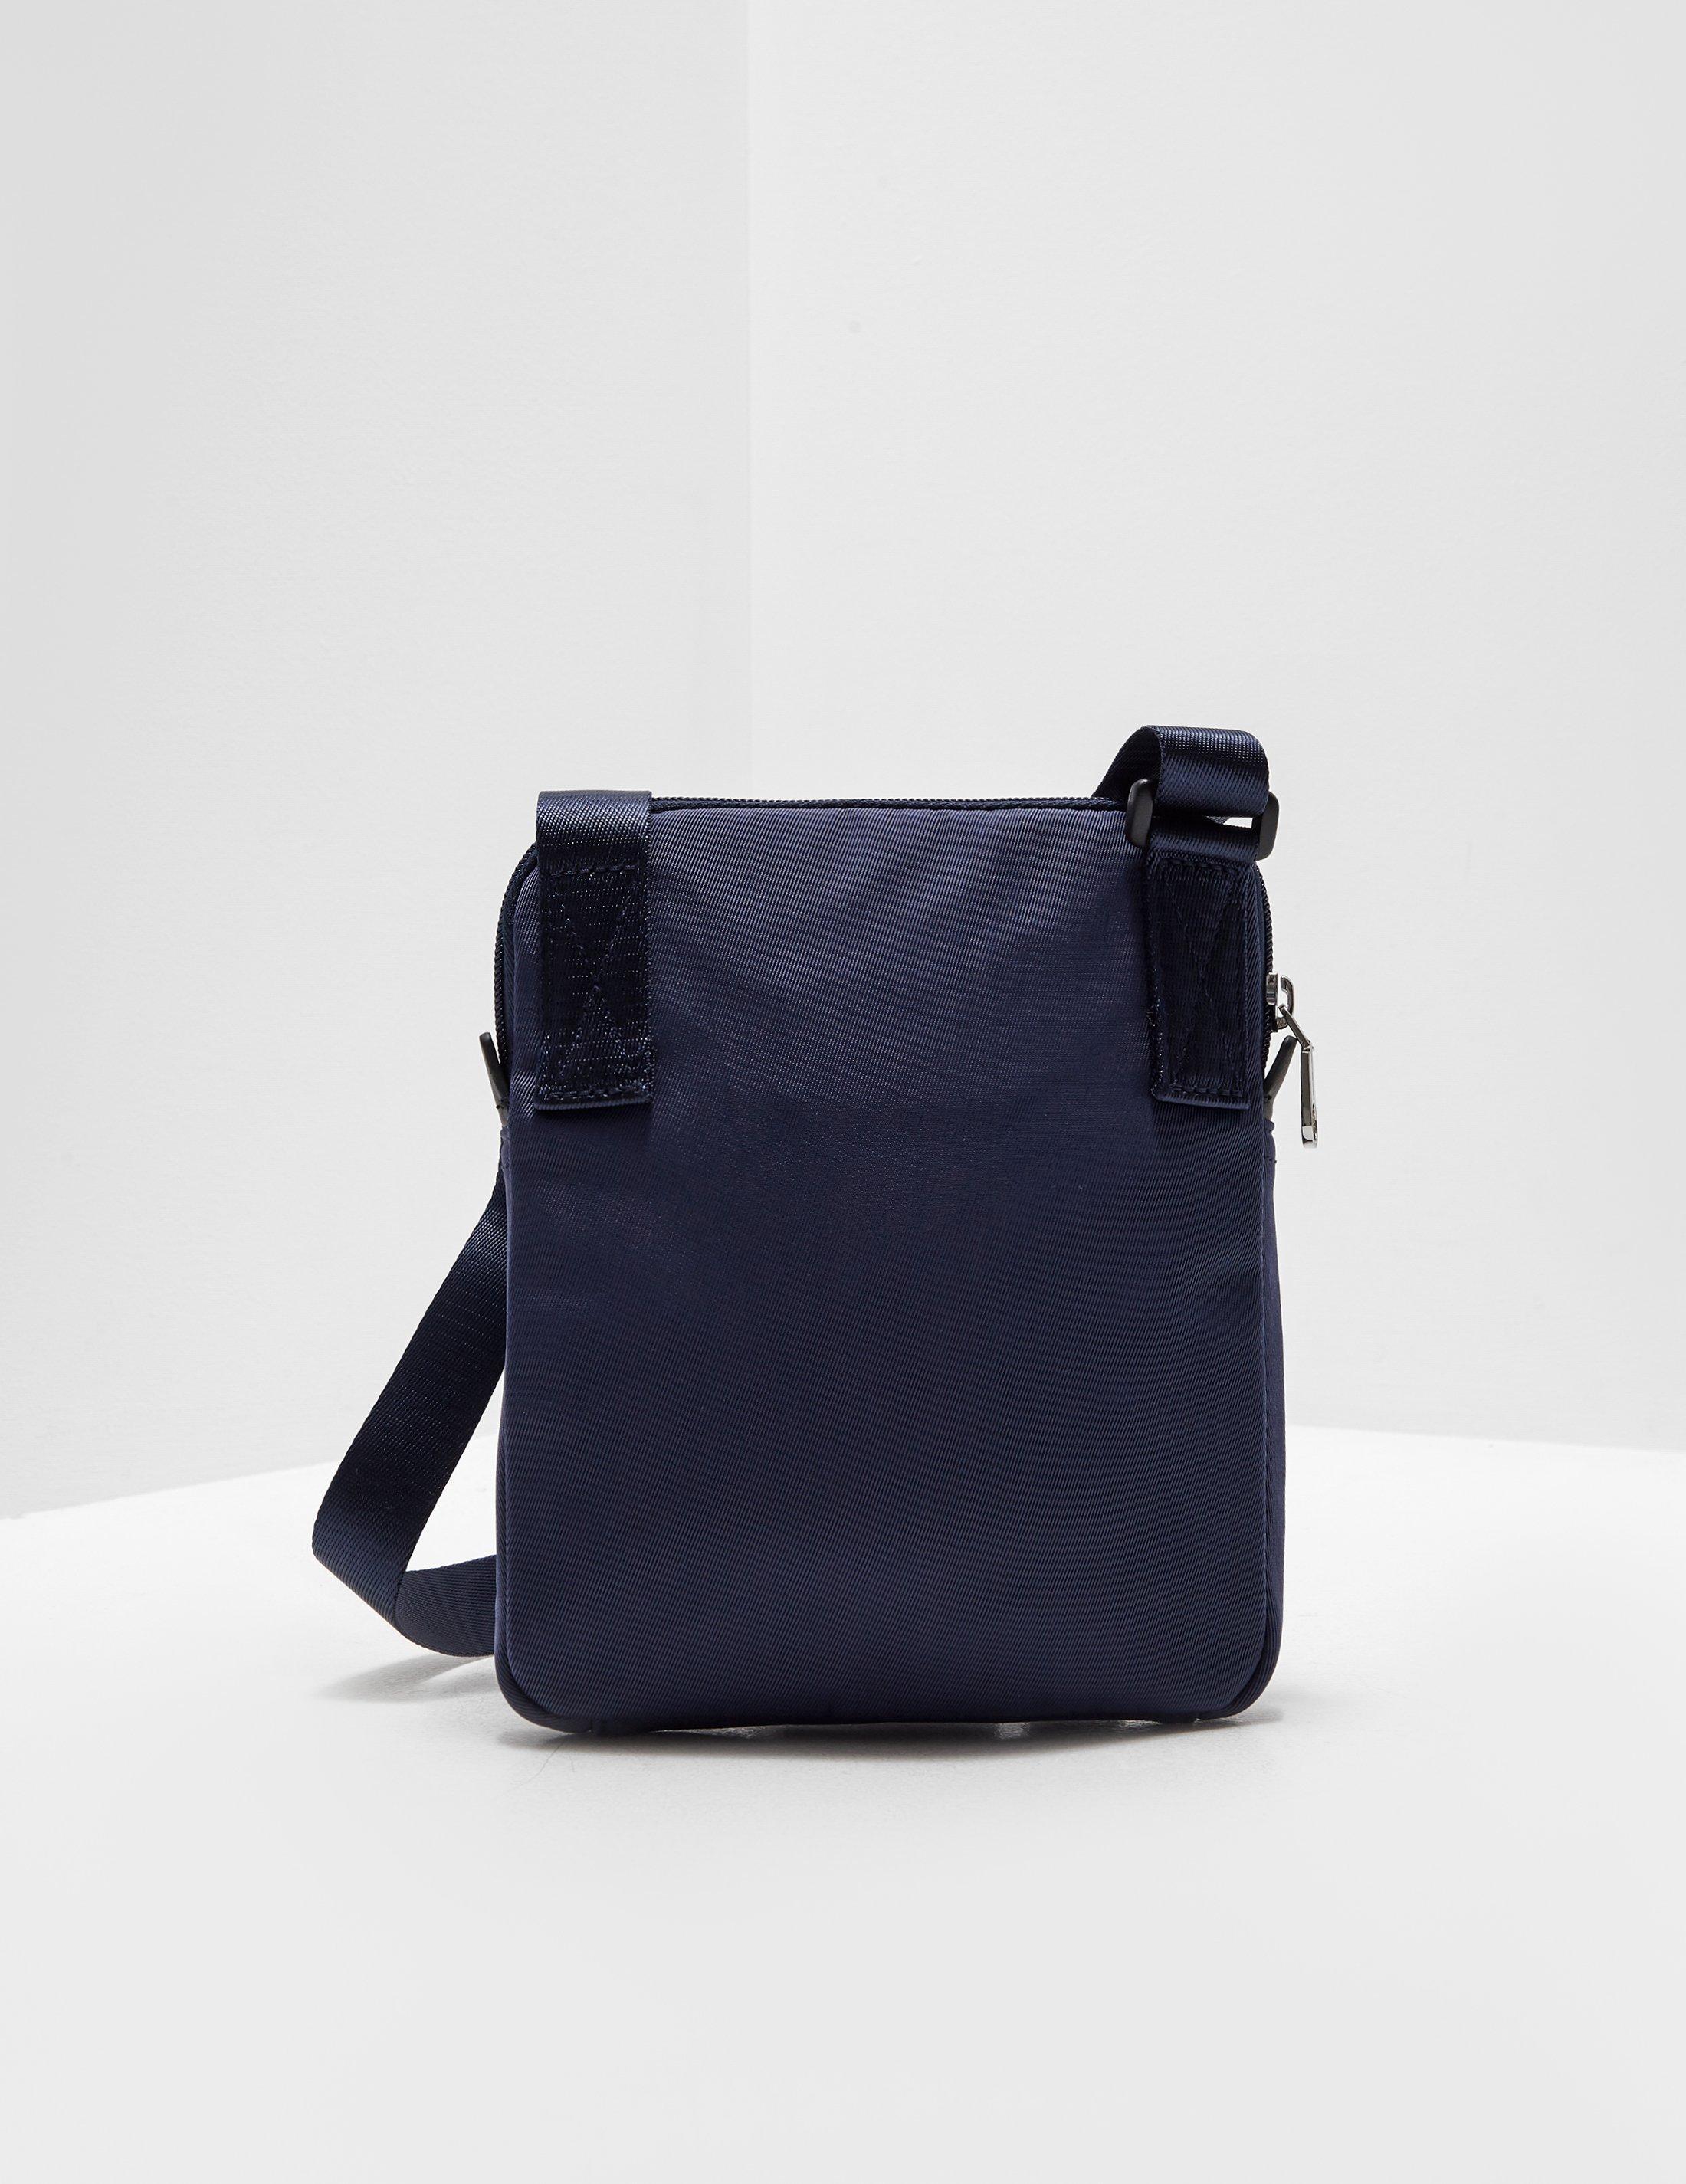 Calvin Klein Denim Retro Logo Crossbody Bag Navy Blue for Men - Lyst